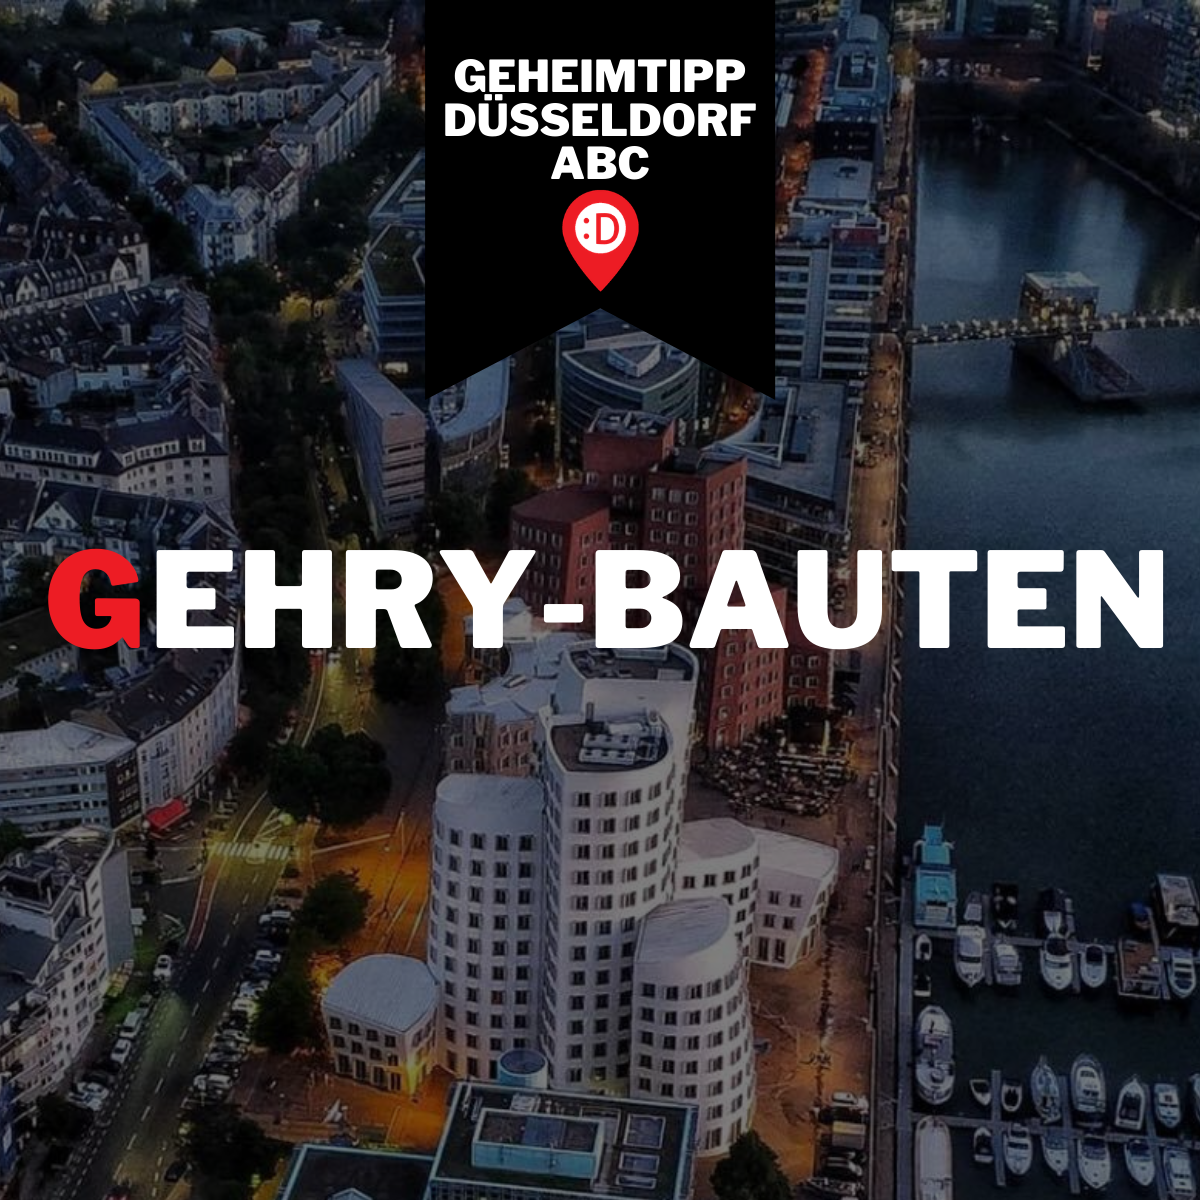 Düsseldorf ABC - G, wie Gehry-Bauten